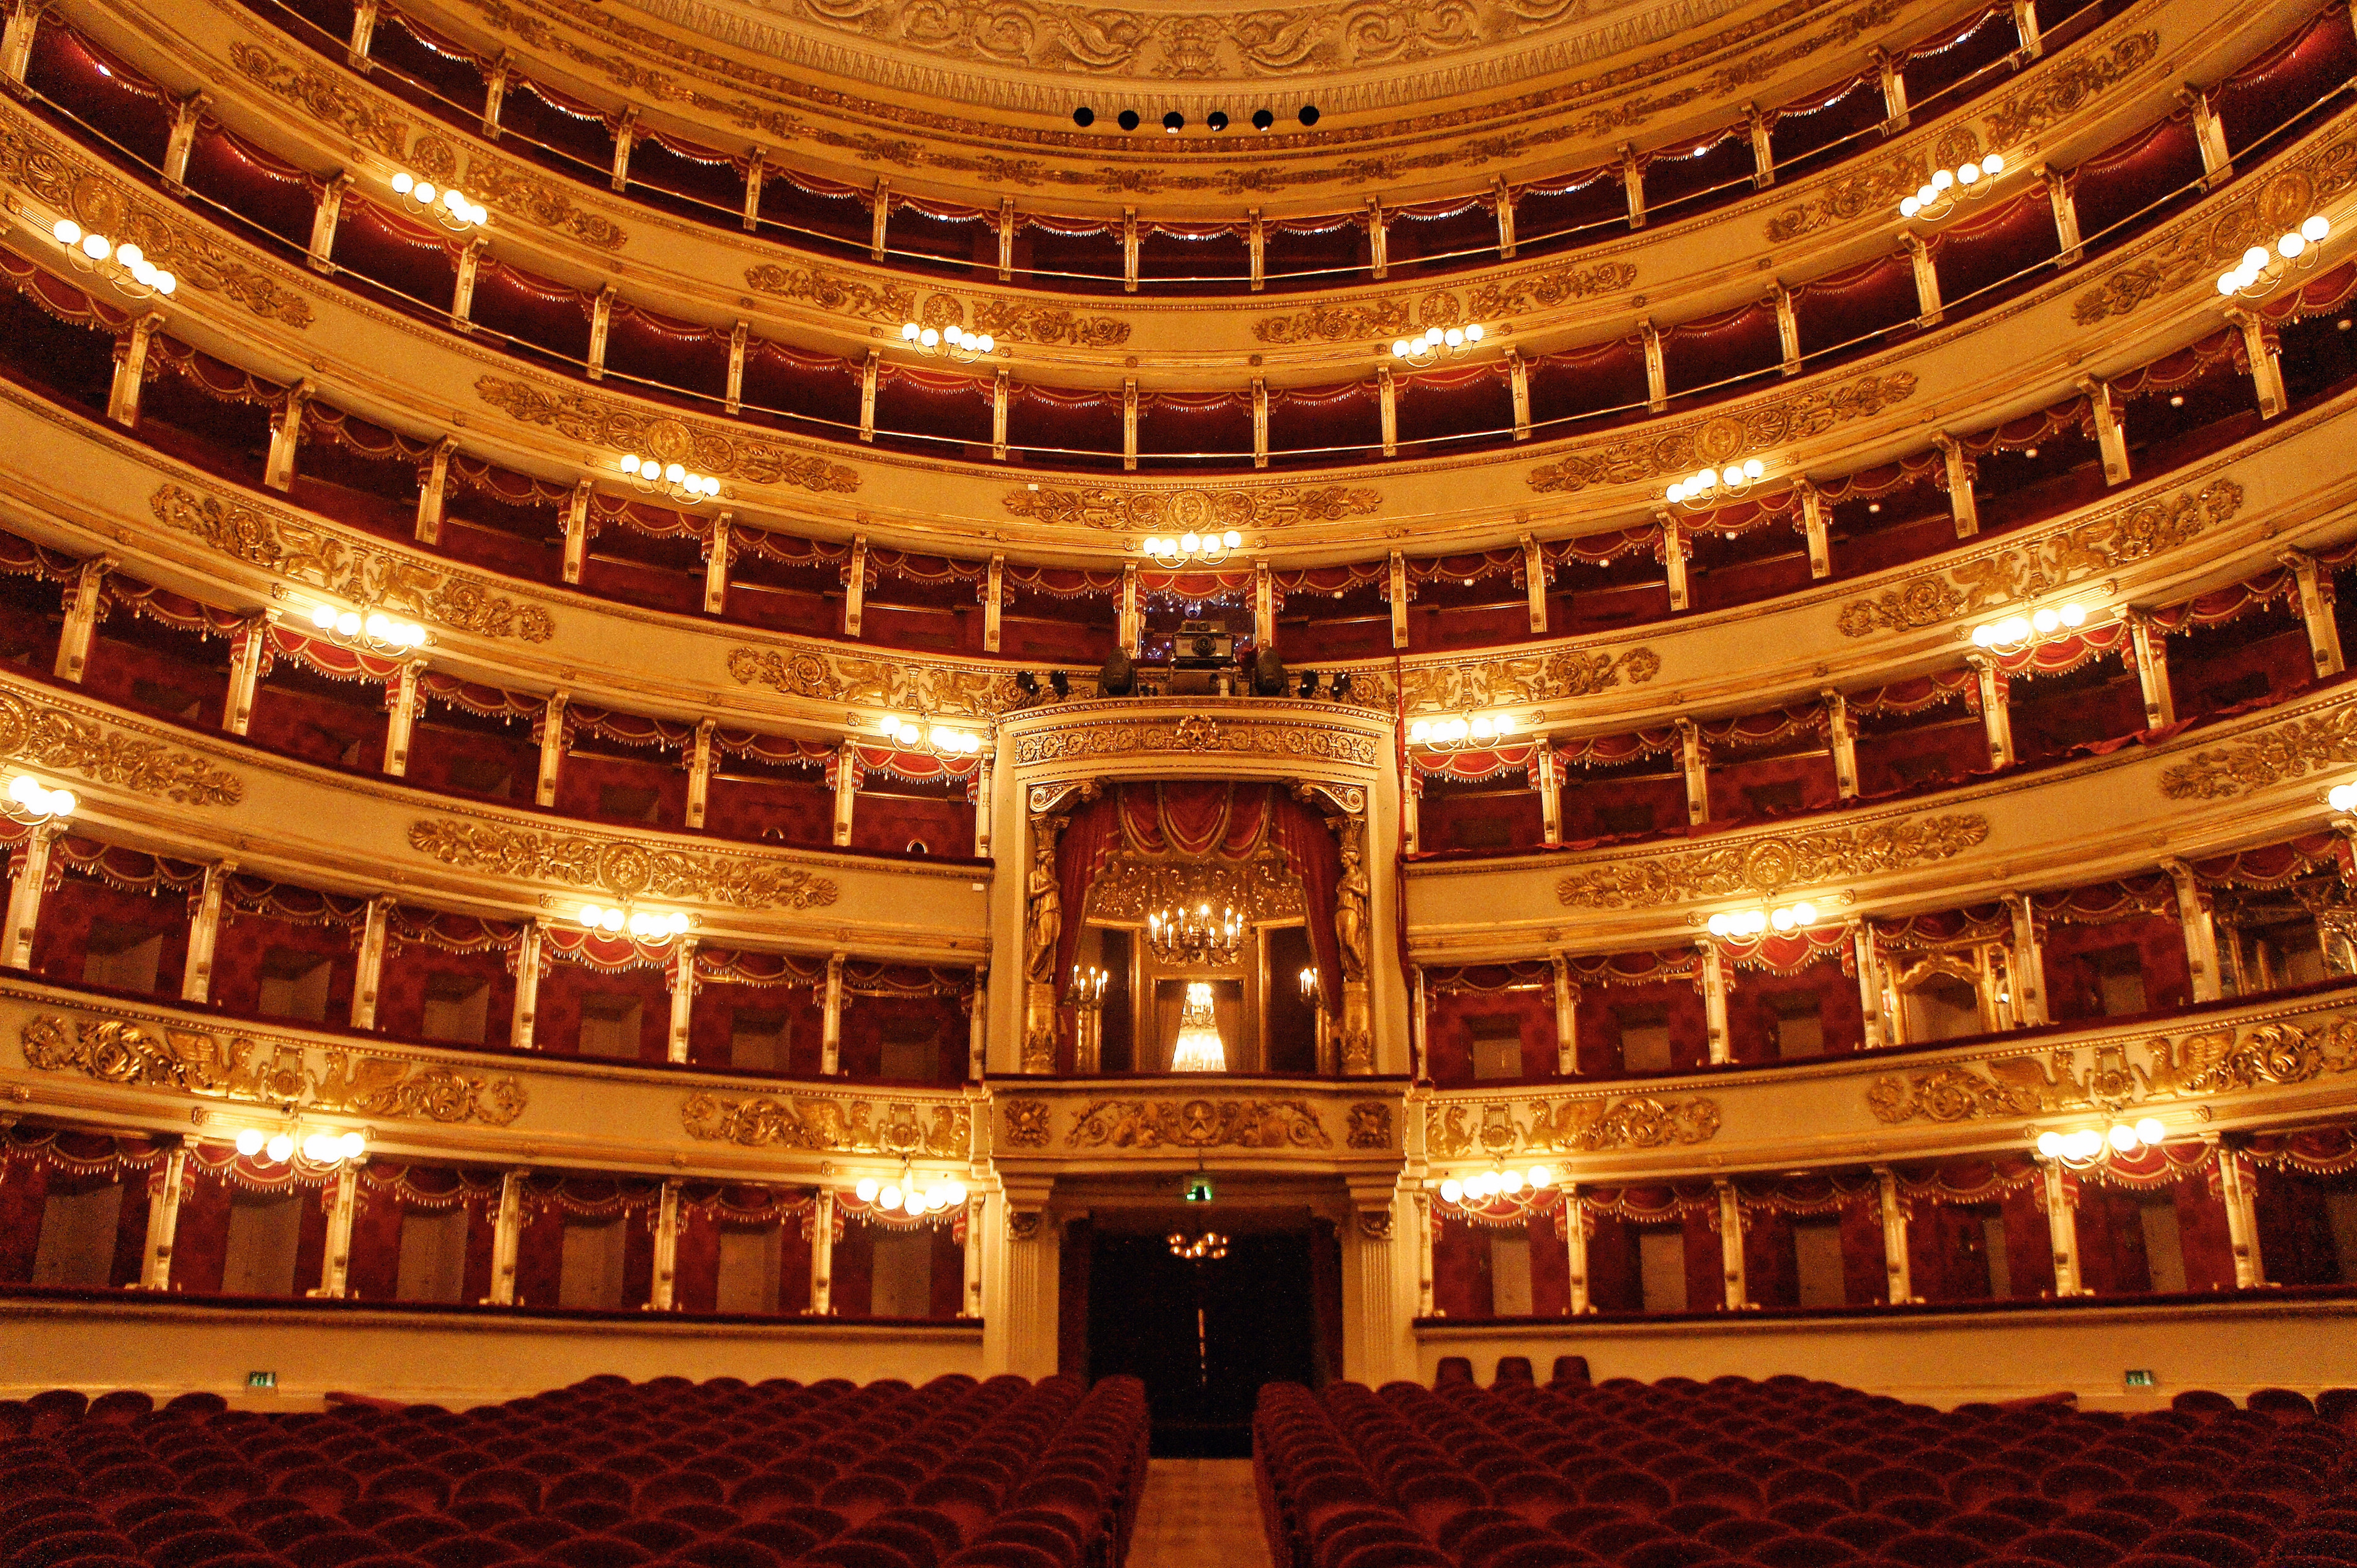 院是世界上最负盛名的歌剧院之一位于意大利米兰斯卡拉歌剧院(teatro